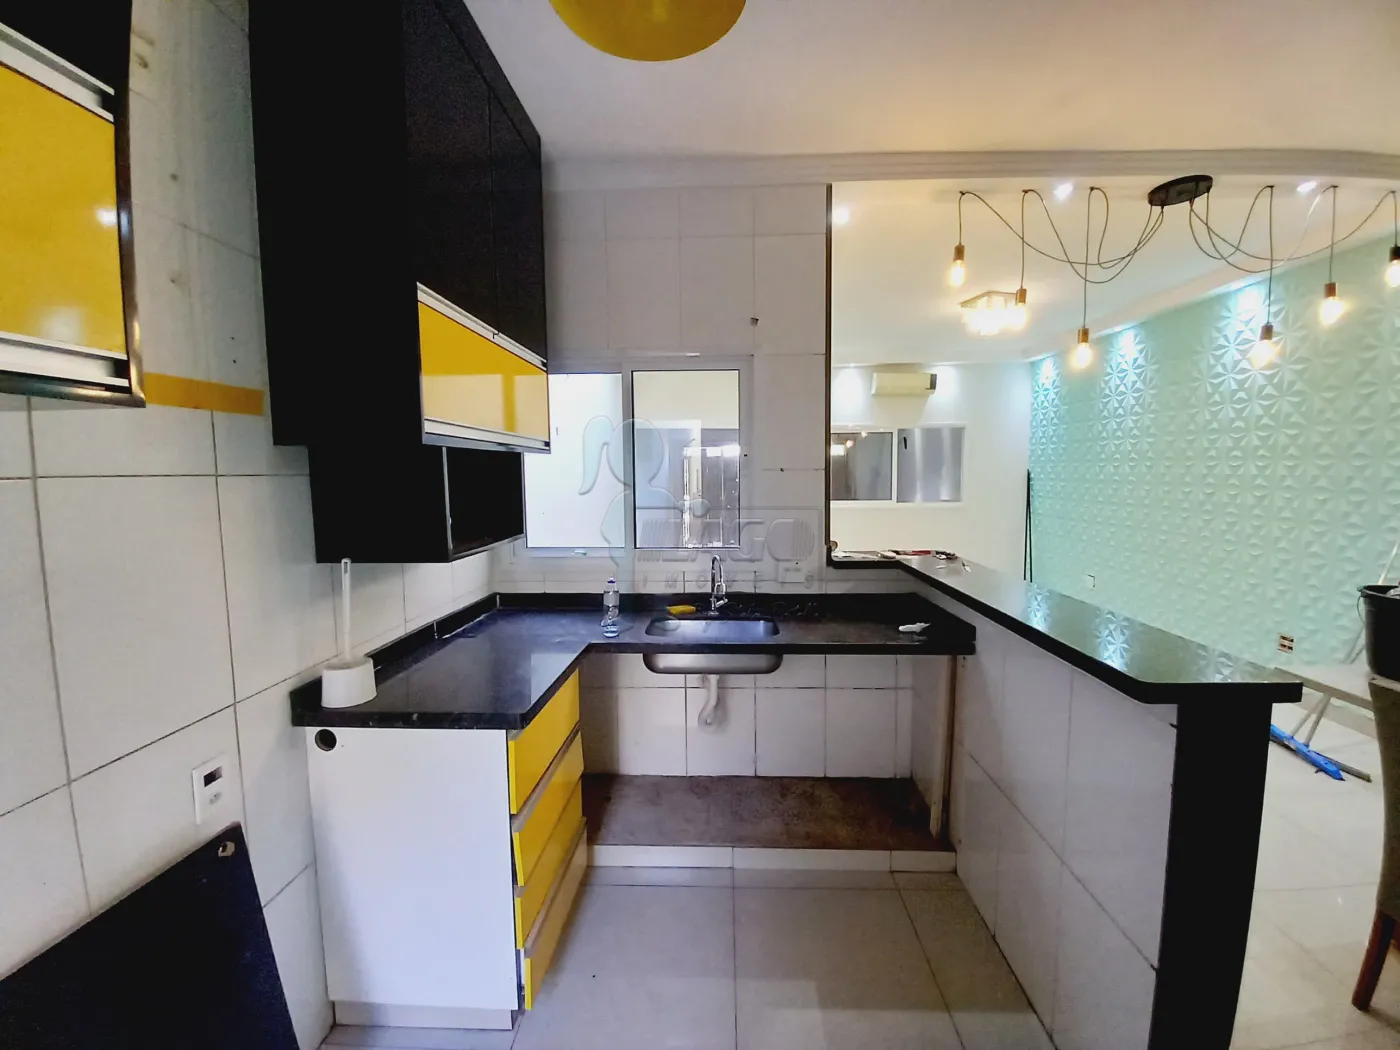 Comprar Casa / Padrão em Ribeirão Preto R$ 371.000,00 - Foto 7